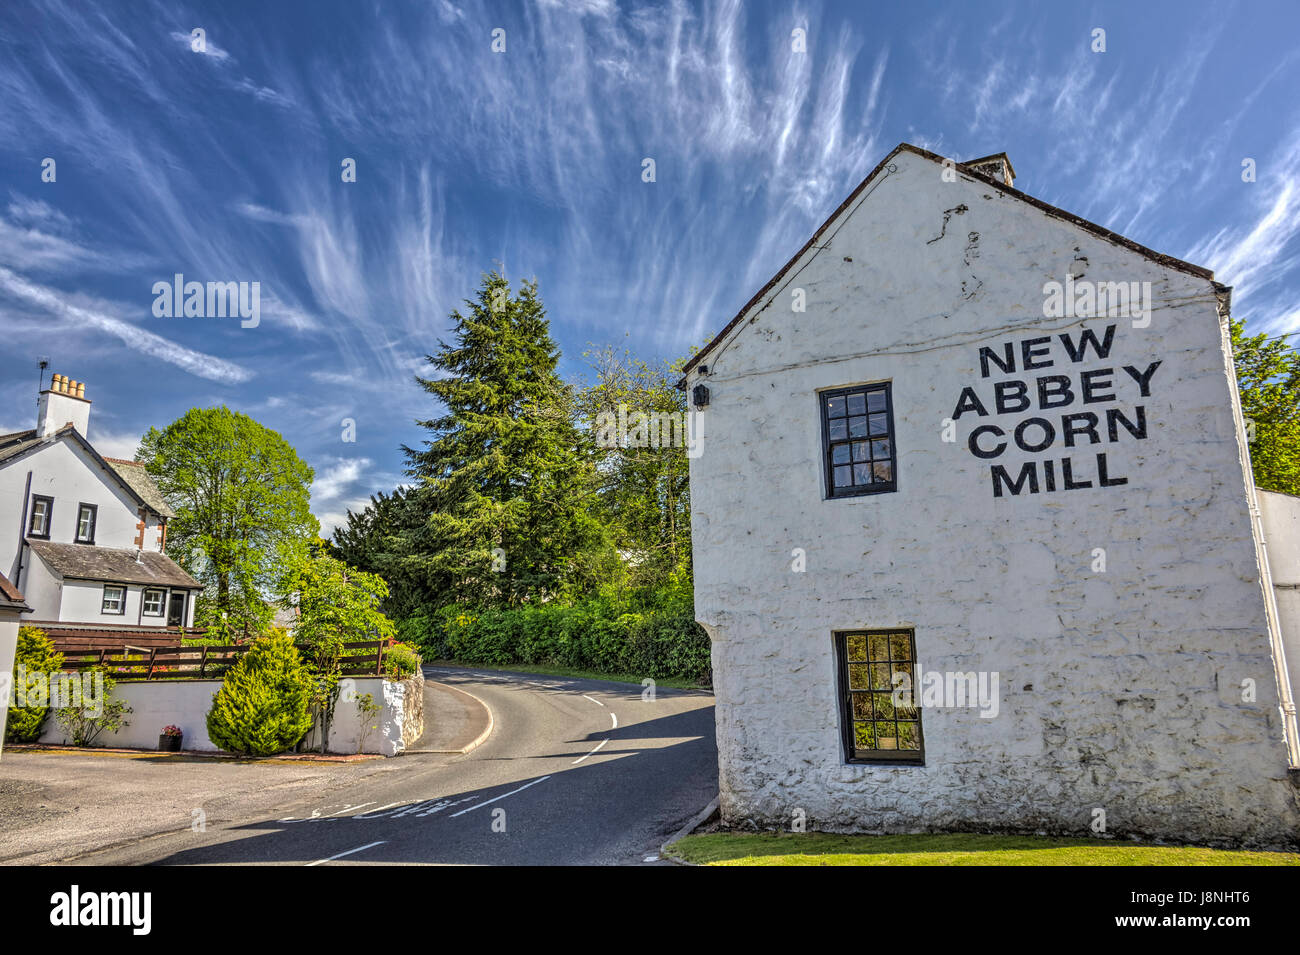 Xviii secolo Corn Mill, di proprietà di ambiente storico di Scozia e aperta al pubblico nel nuovo Abbey, Dumfries and Galloway, Scozia. Immagine hdr. Foto Stock